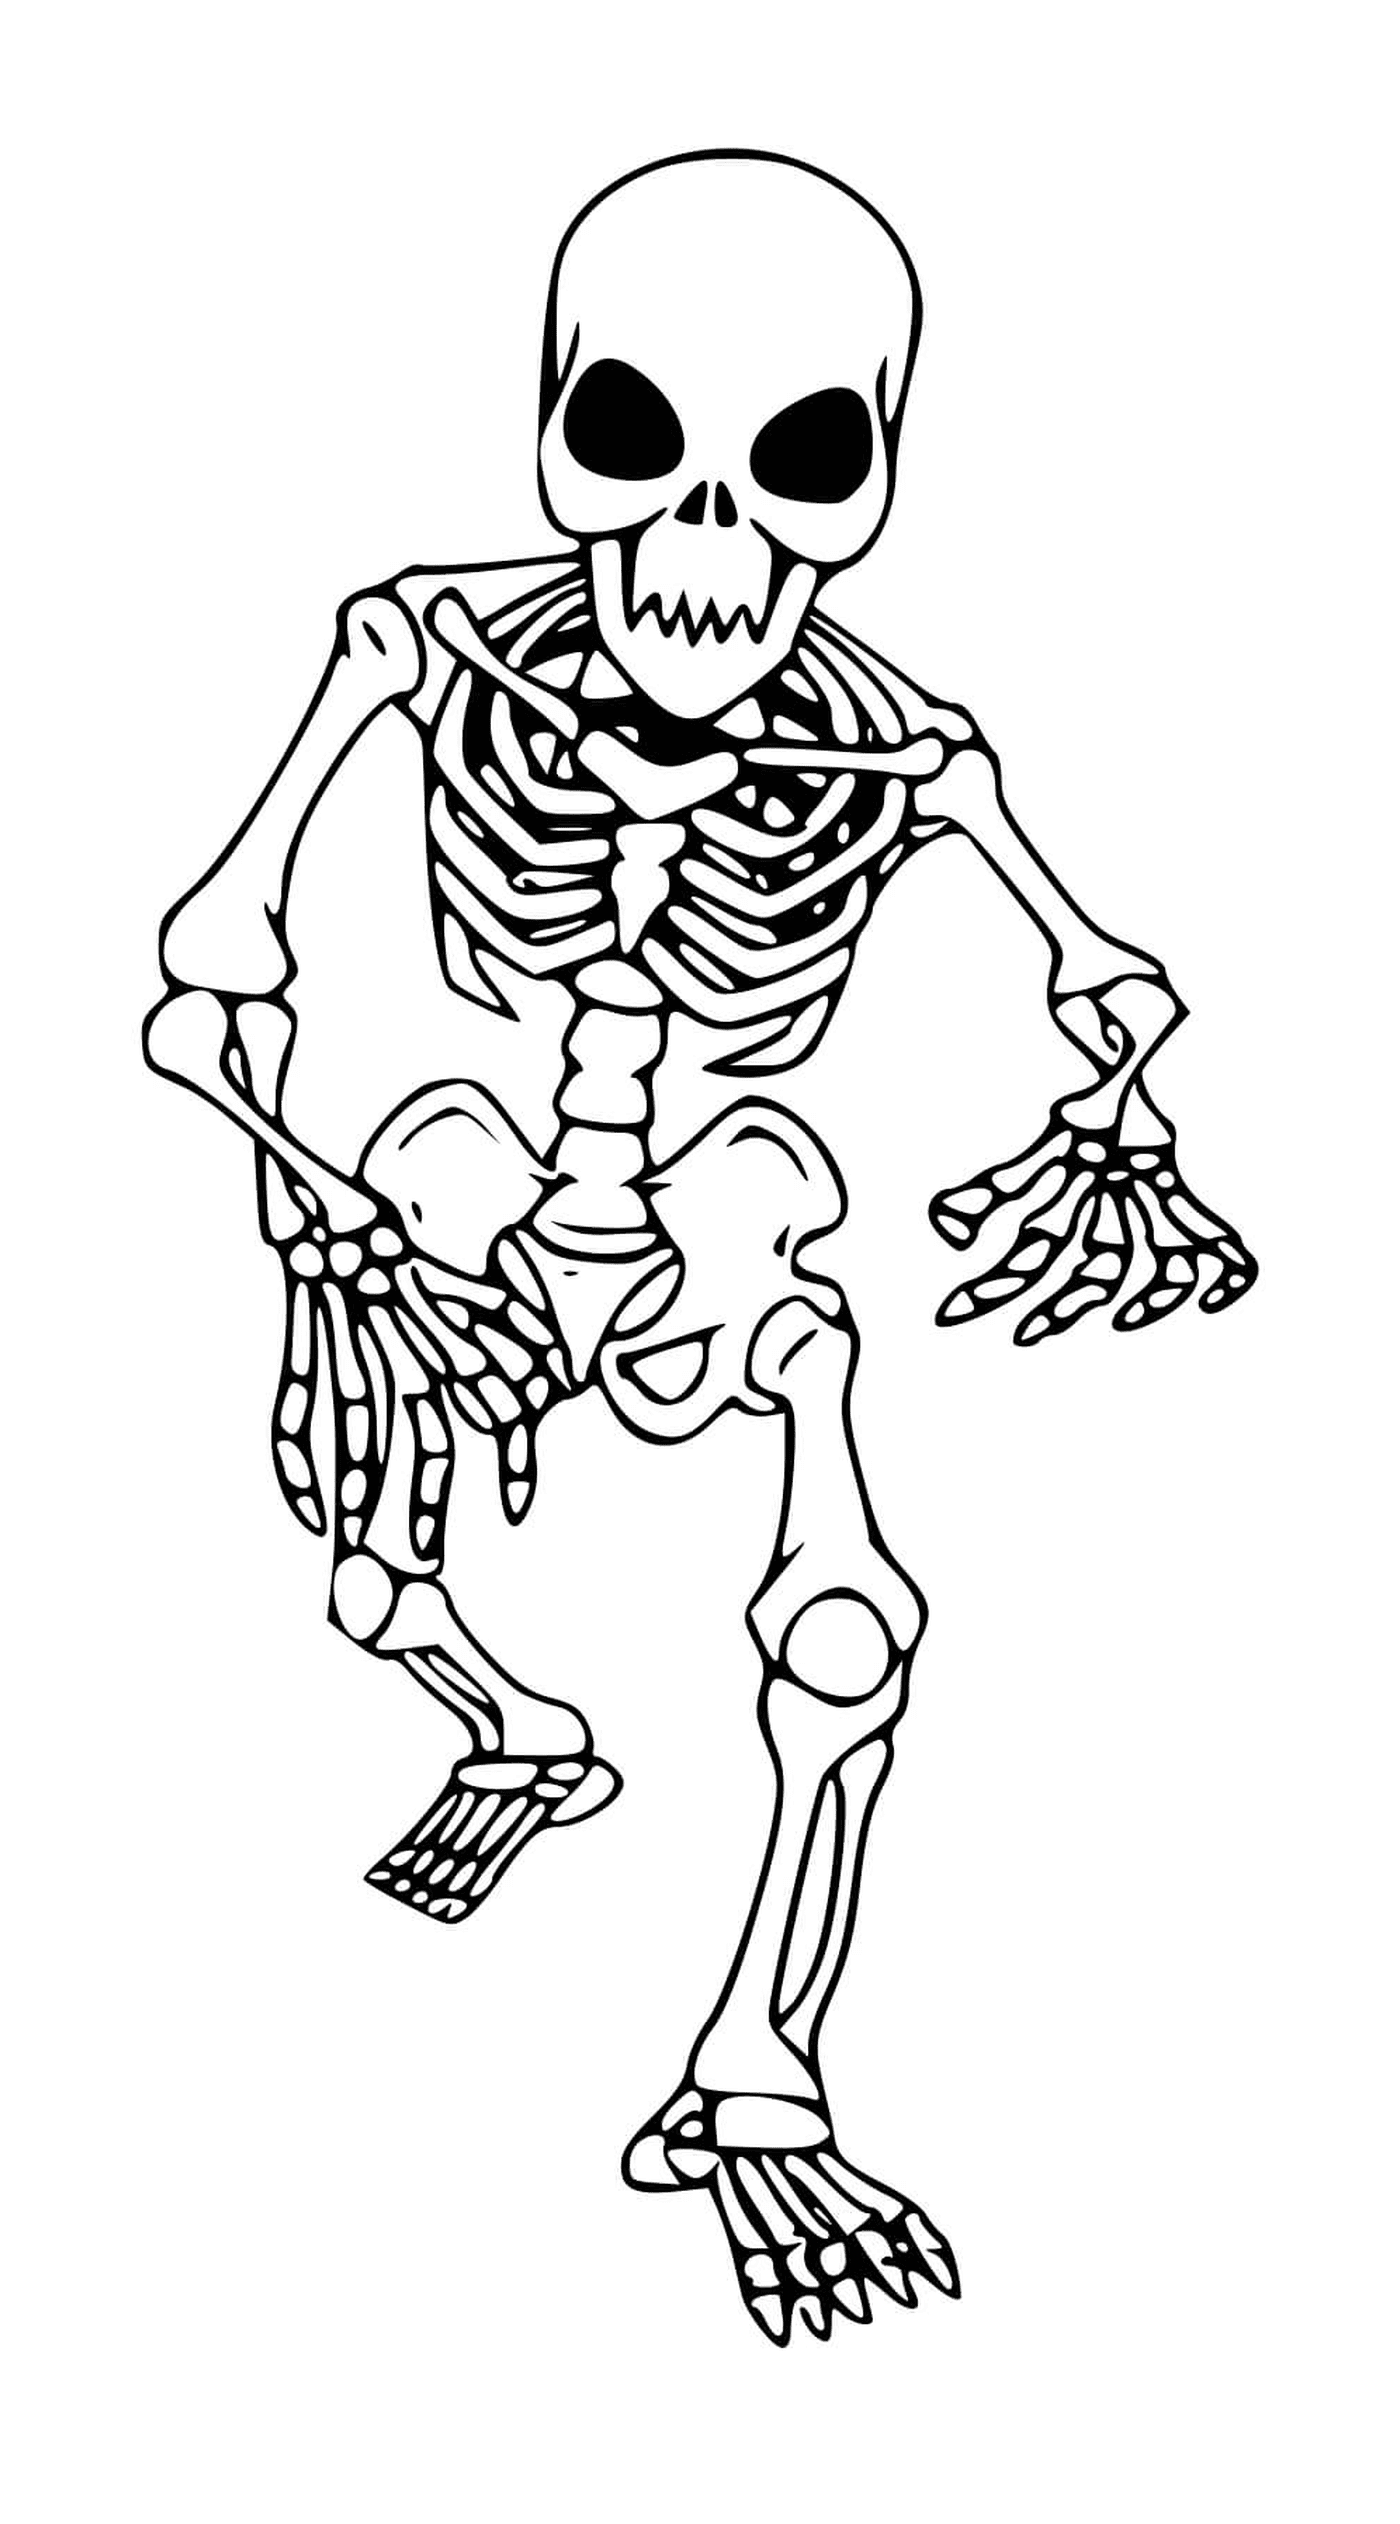  Esqueleto andando para crianças, sem cabeça 